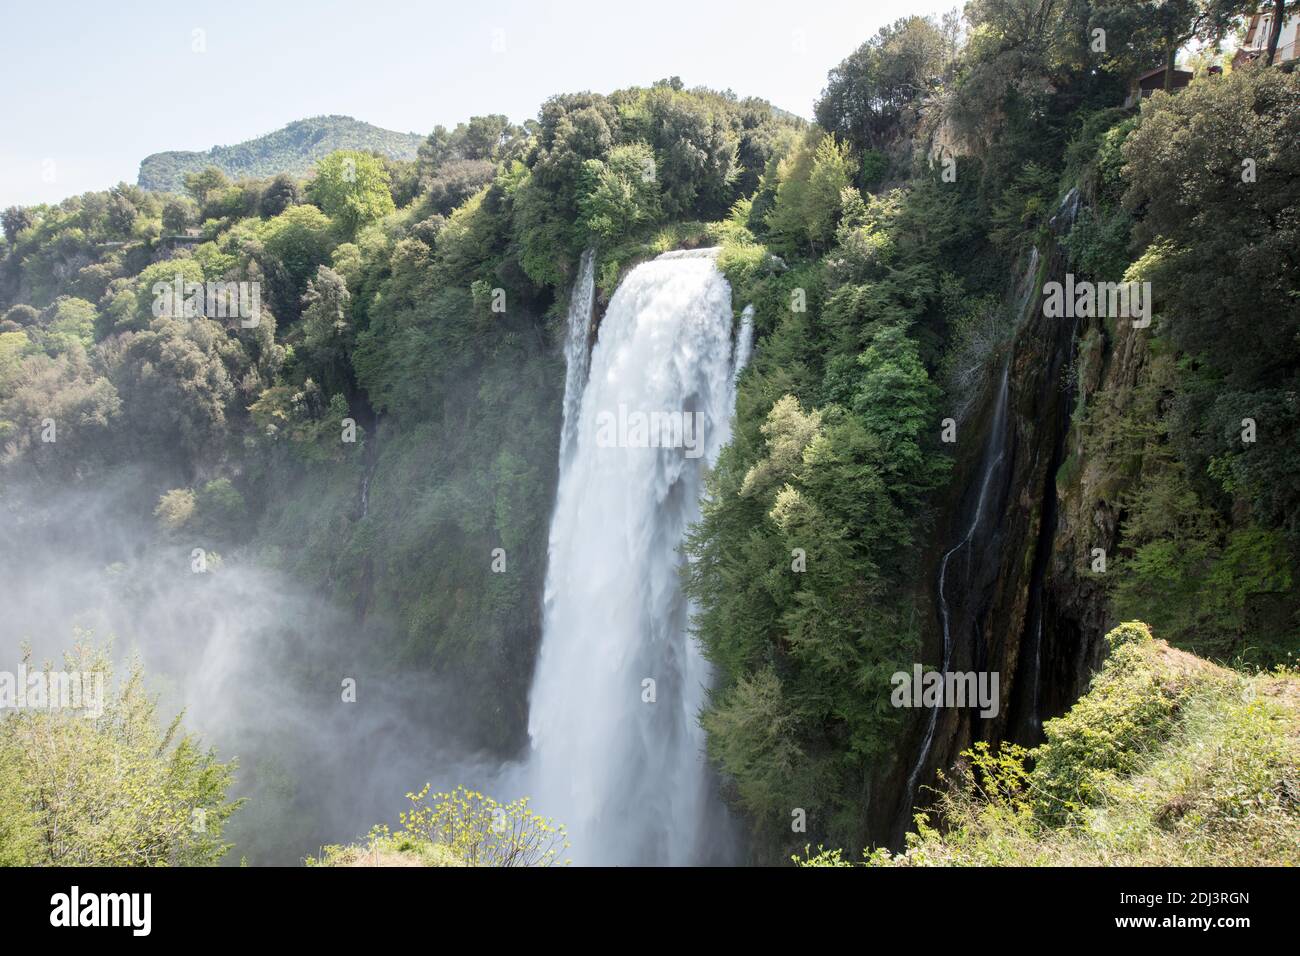 Marmore Falls, Umbrien, Italien (Cascata delle Marmore) - der höchste von Menschen geschaffene Wasserfall der Welt, der von den alten Römern geschaffen wurde, in der Nähe von Terni in Umbrien Stockfoto